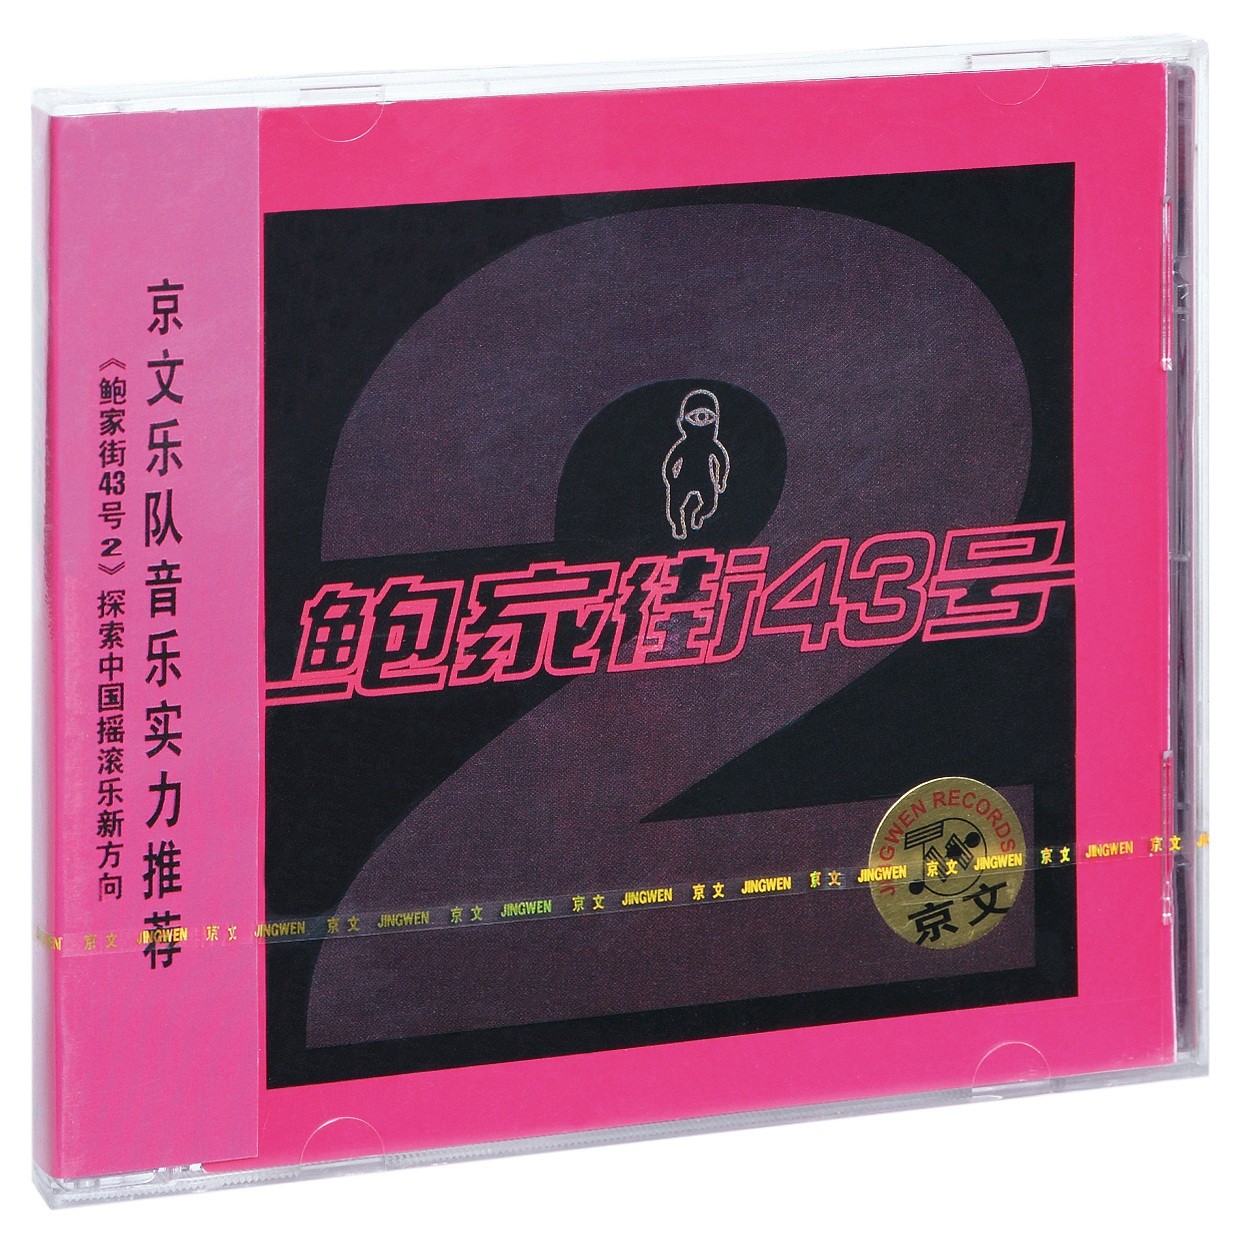 正版唱片 汪峰与鲍家街43号乐队:同名专辑2(CD)